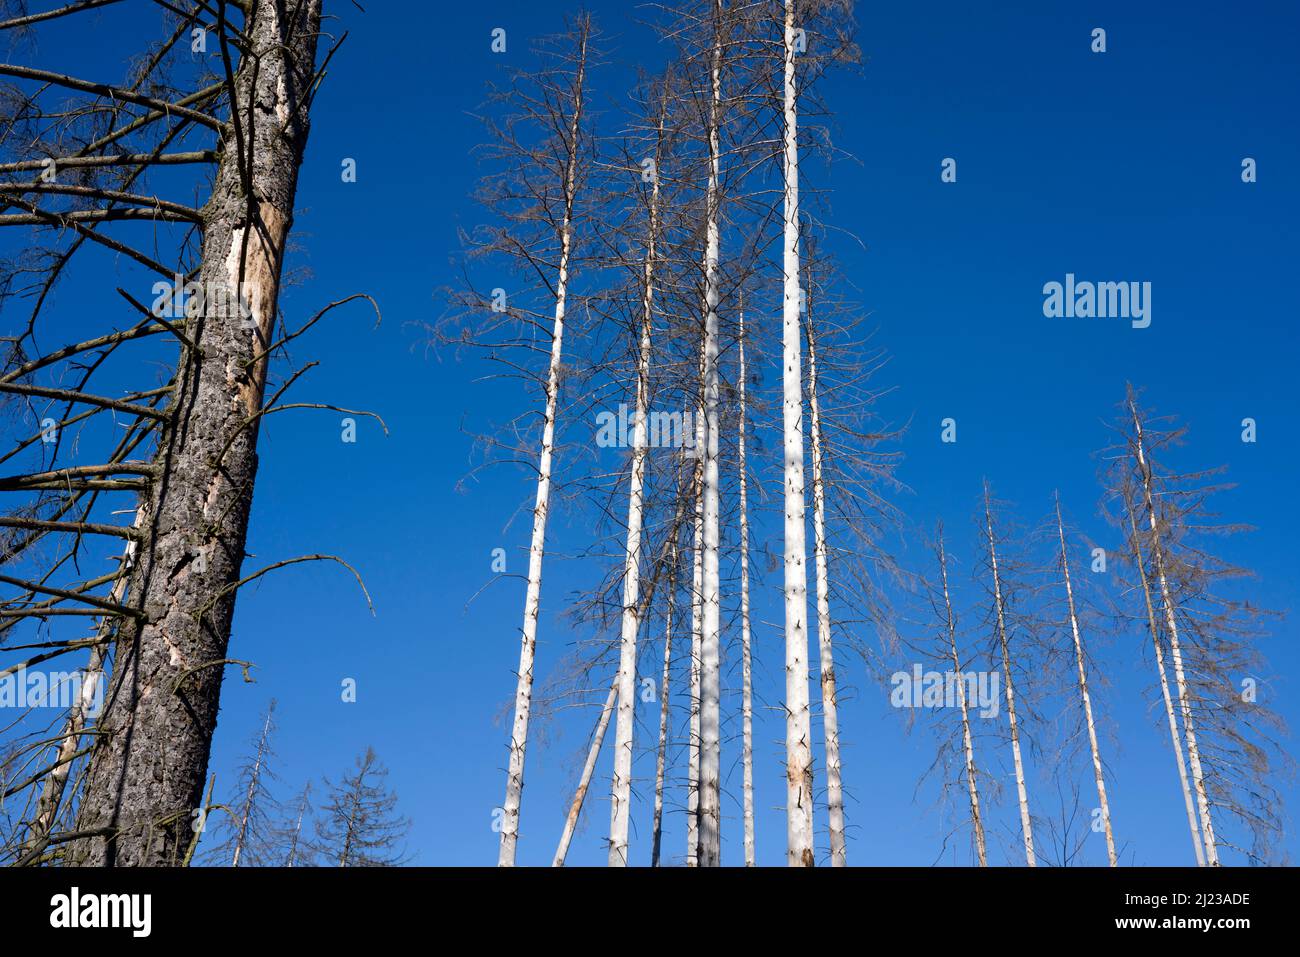 Arbres morts d'épinette (Picea abies), forêt primitive Urwald Sababurg, Hofgeismar, Weser Uplands, Weserbergland, Hesse, Allemagne Banque D'Images